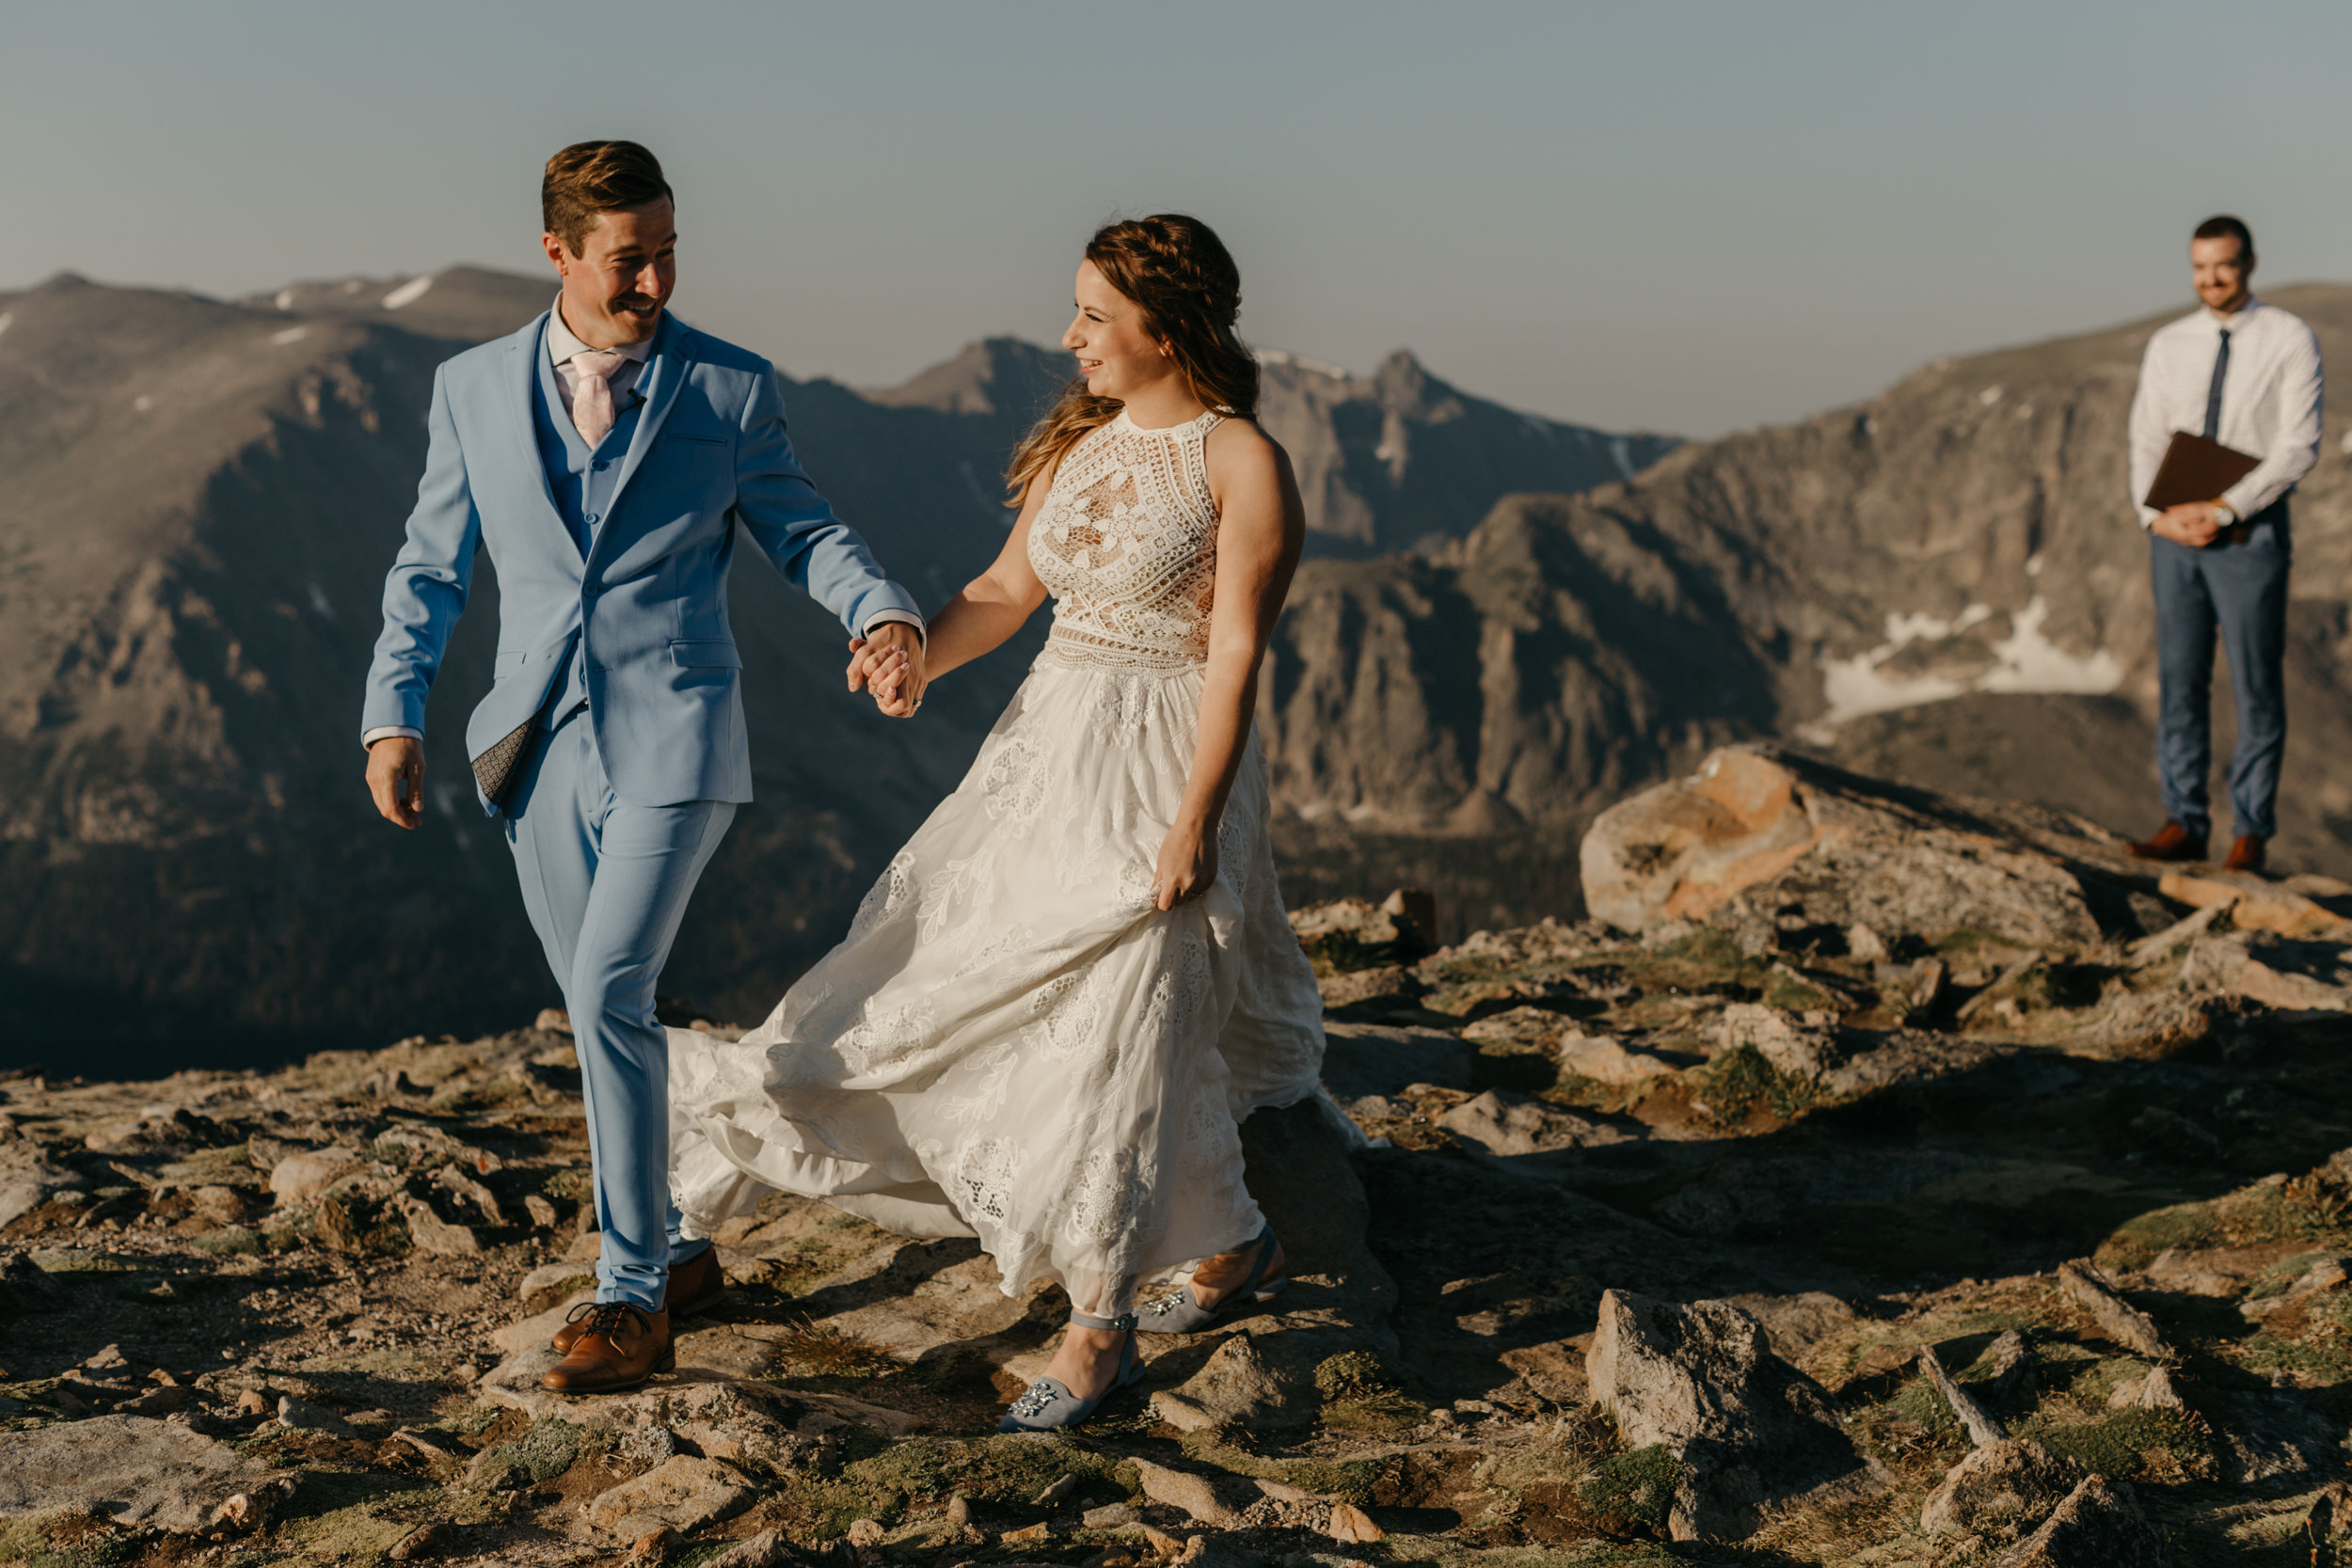 Our Colorado Mountain Wedding